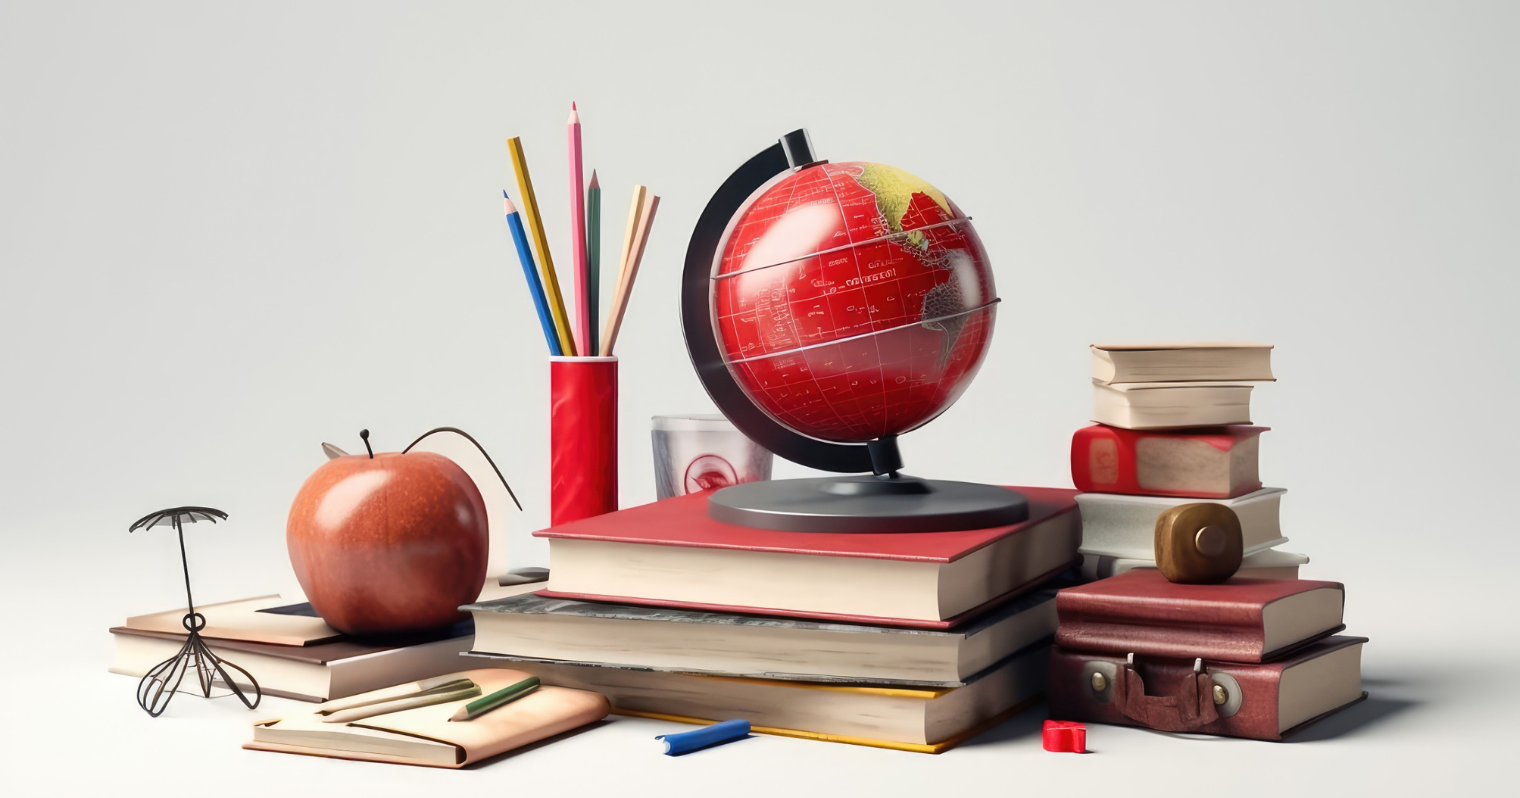 Alapvető tanszerek gyűjteménye látható a képen: a globális tanulást jelképező földgömbtől a tudást szimbolizáló könyvekig, ceruzákig.